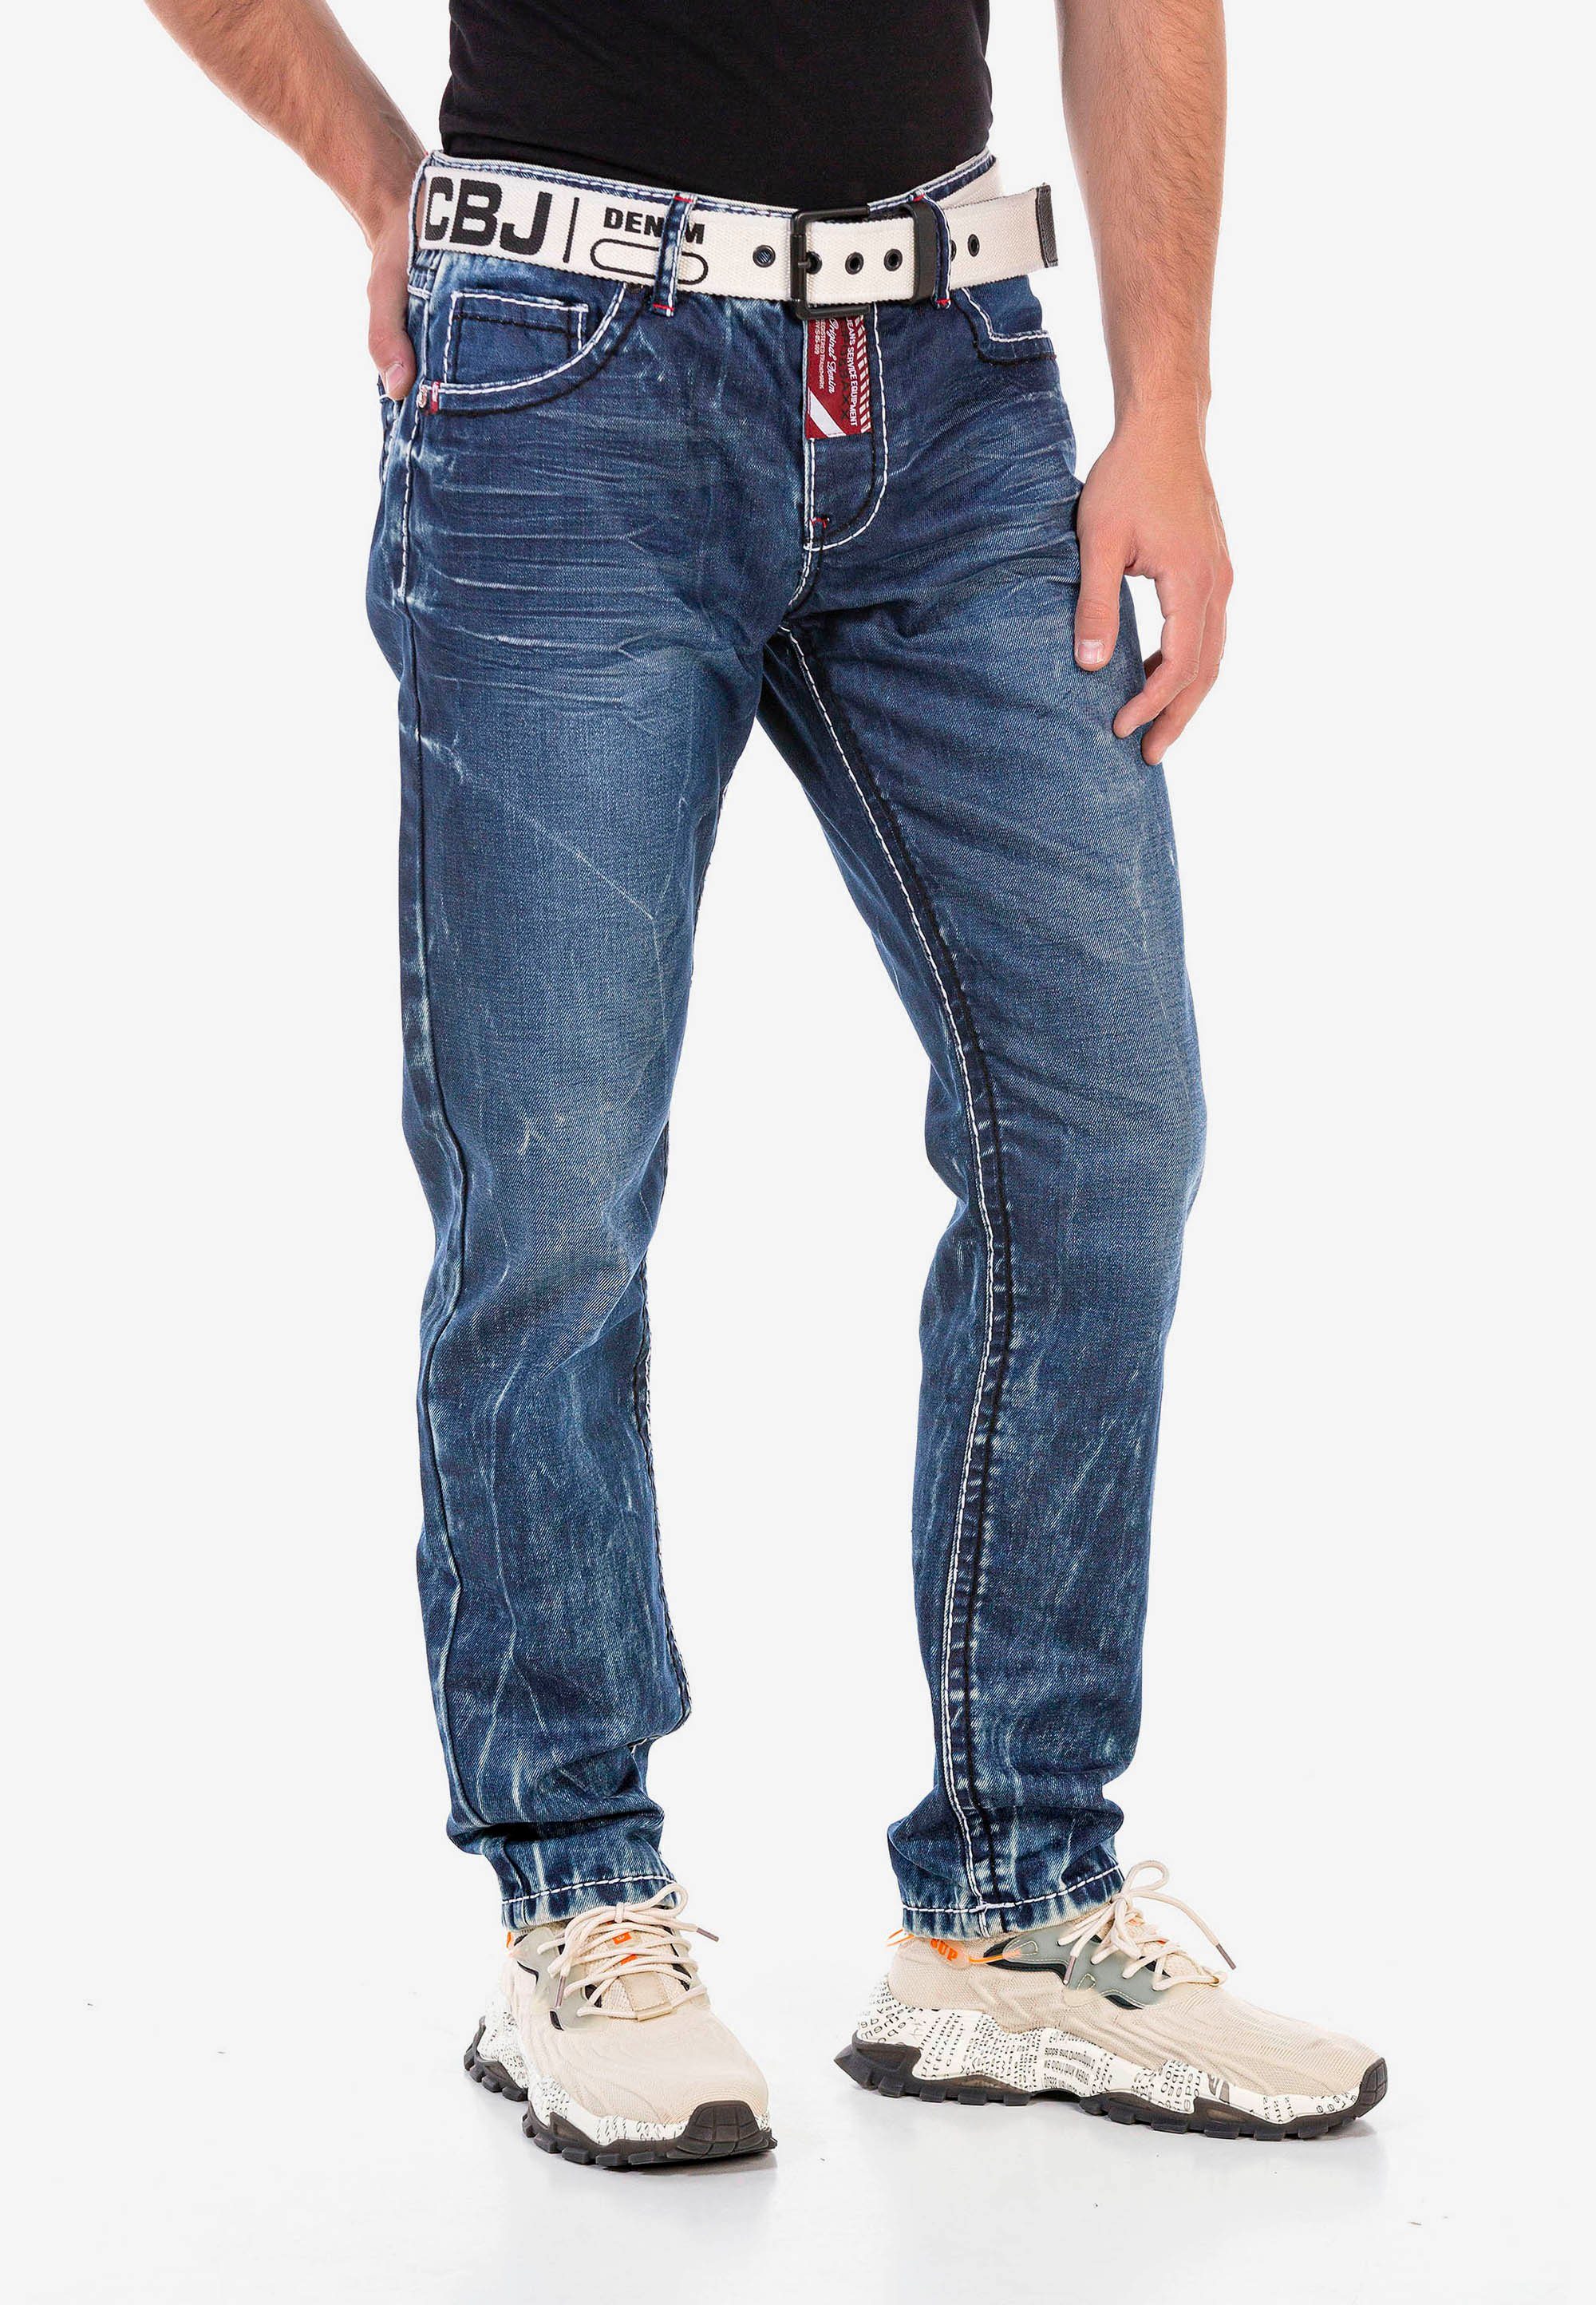 Baxx Waschung extravaganter Cipo & Straight-Jeans mit